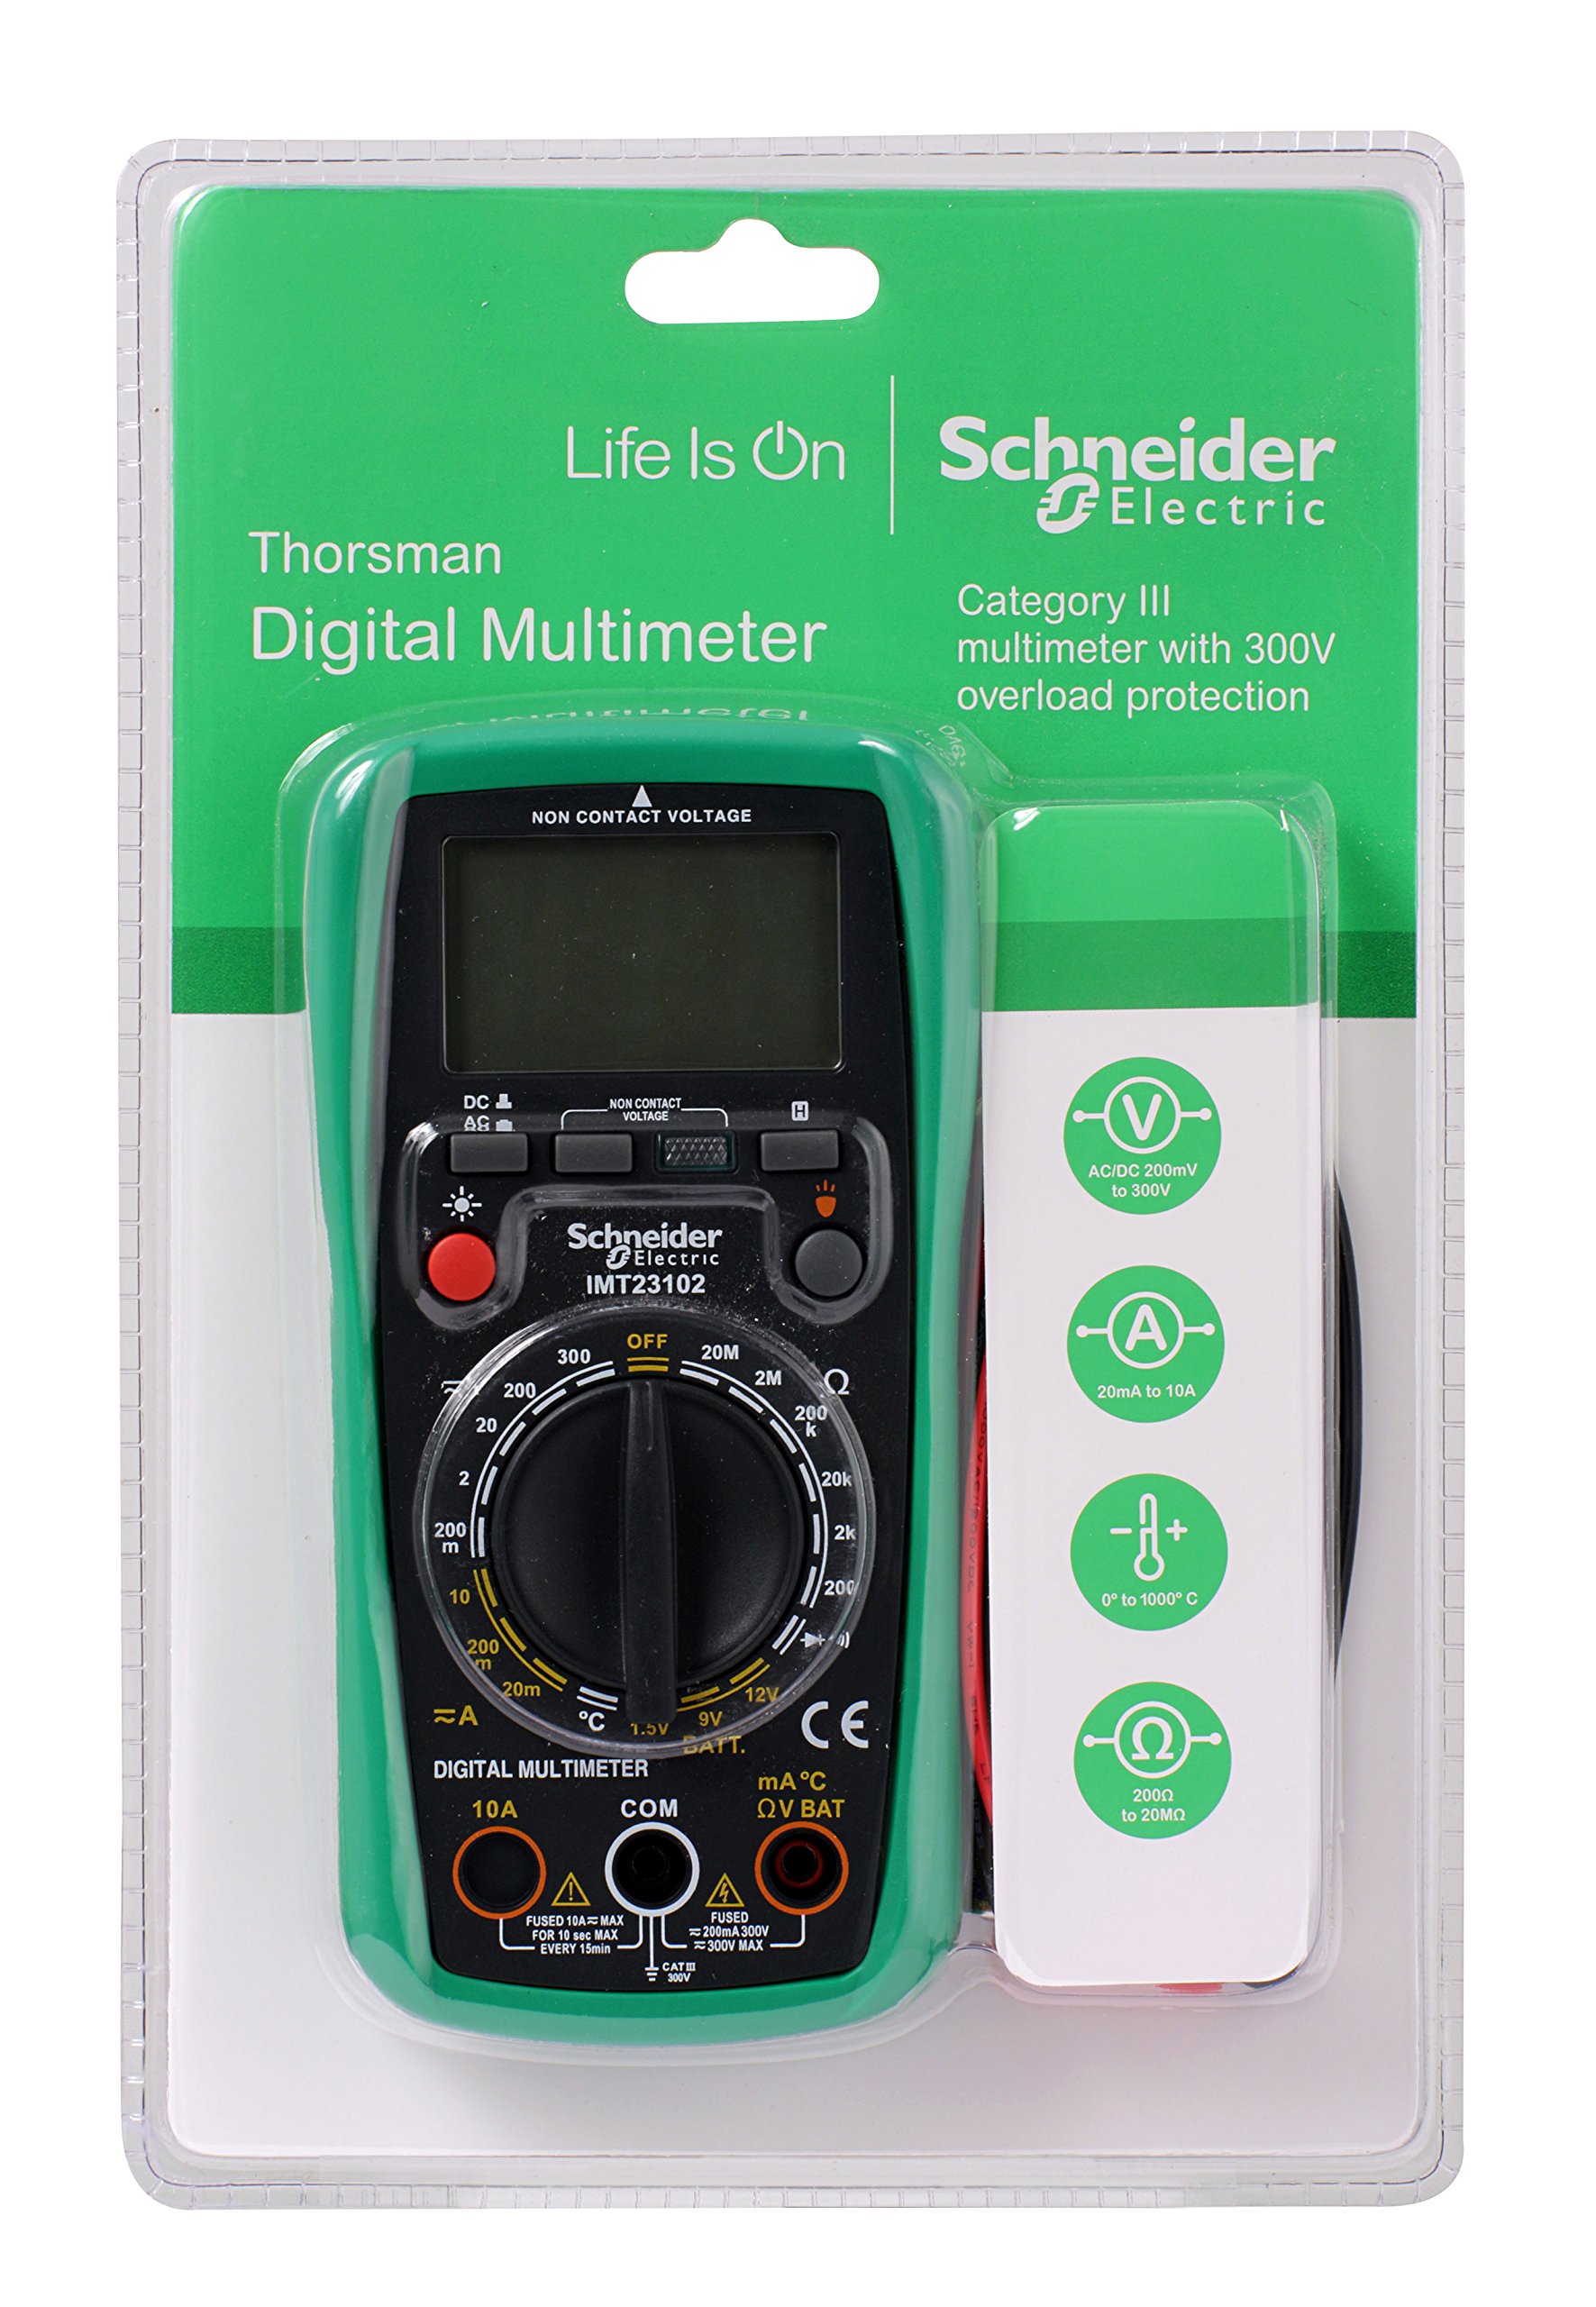 Schneider Electric - Thorsman Digitalmultimeter, Präzise Messungen von Spannung, Strom, Widerstand, Batteriestand und Temperatur mit beleuchtetem LCD-Display - Batterie 9 V, 300 V, IMT23202